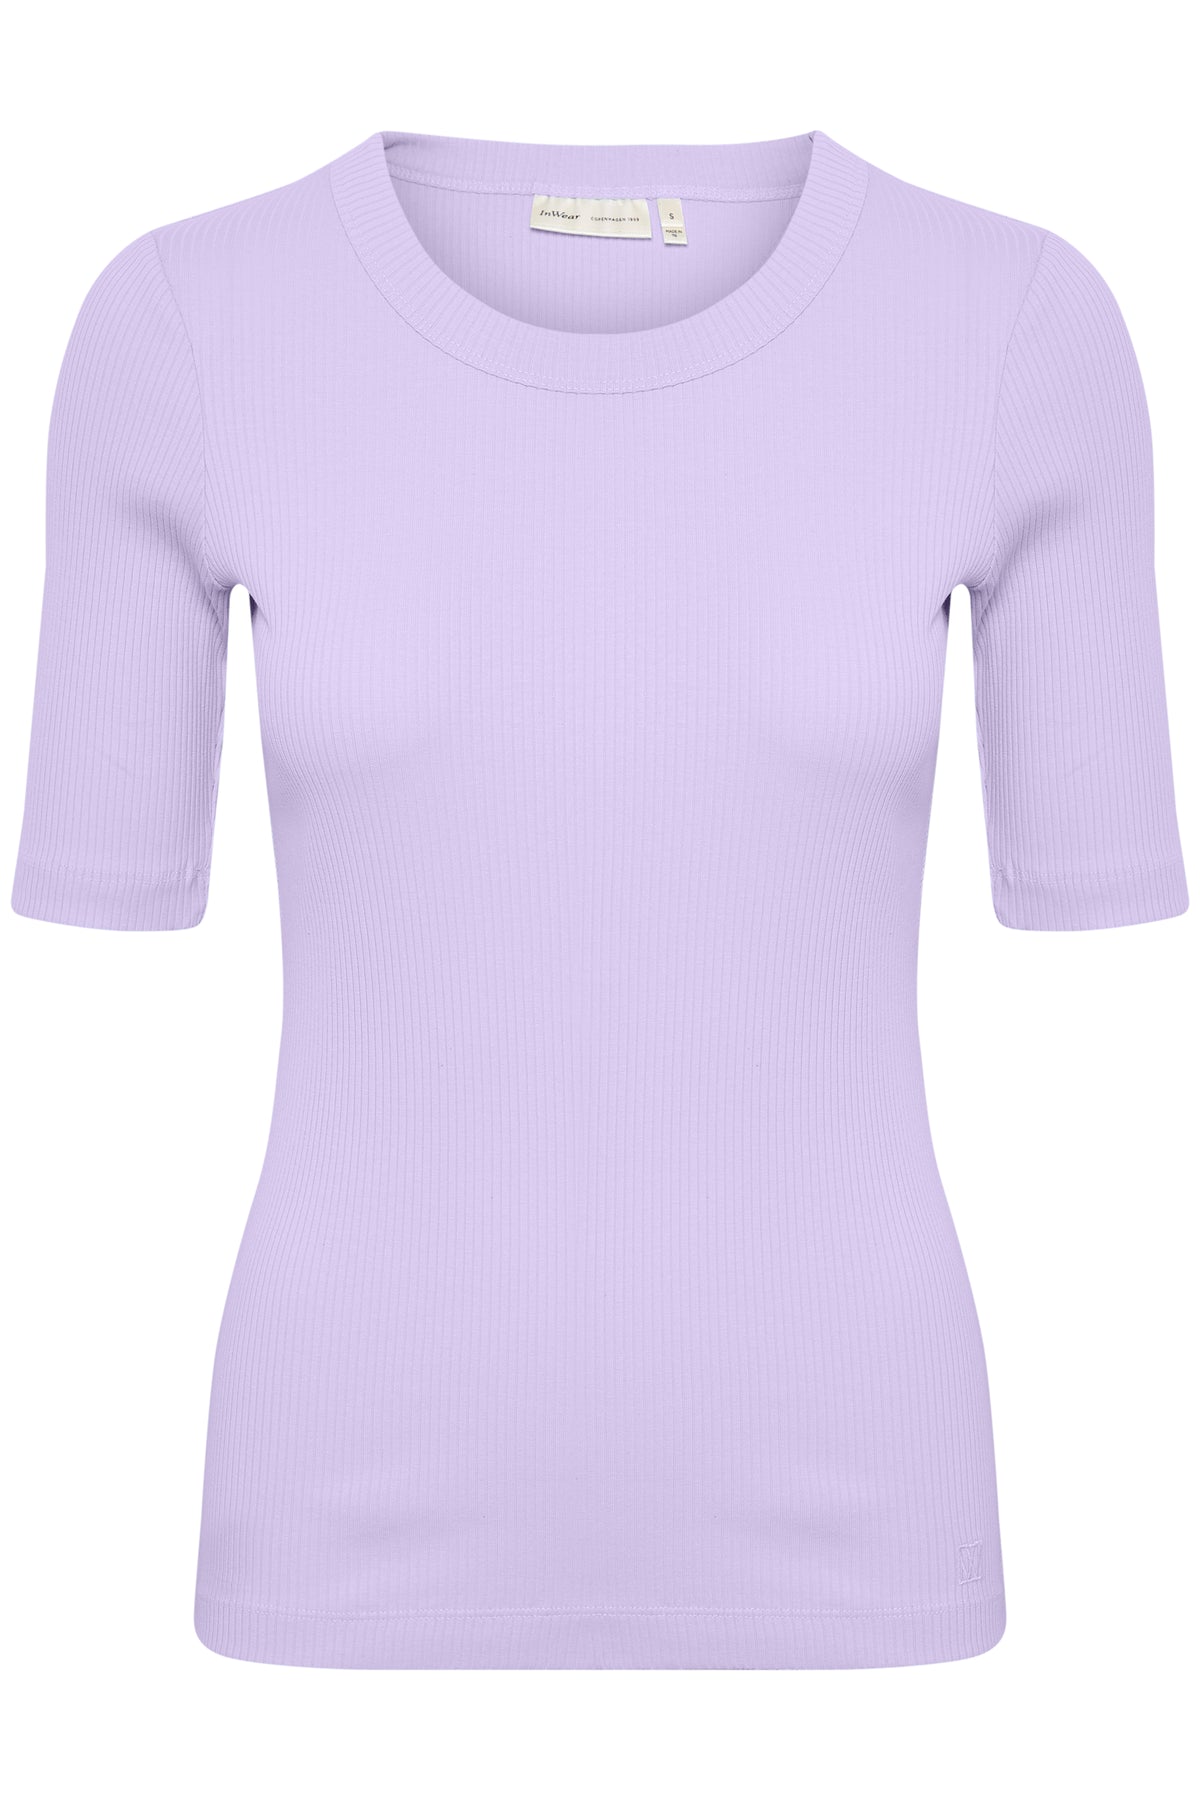 DagnaIW T-Shirt - Lavender